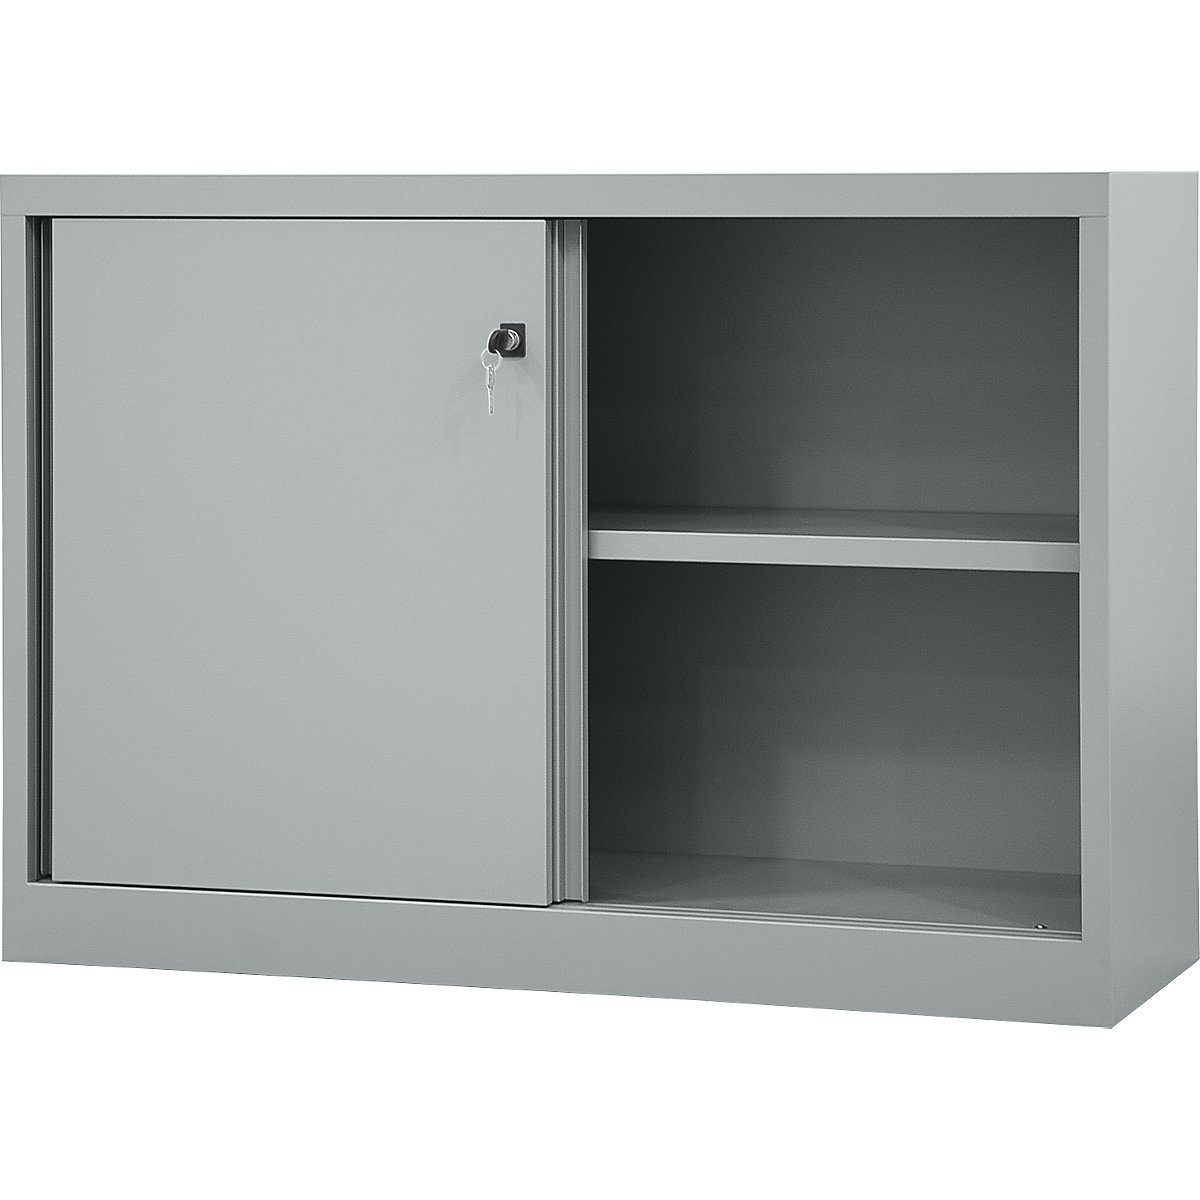 ECO sliding door cupboard – BISLEY, 1 shelf, 2 file heights, light grey-7